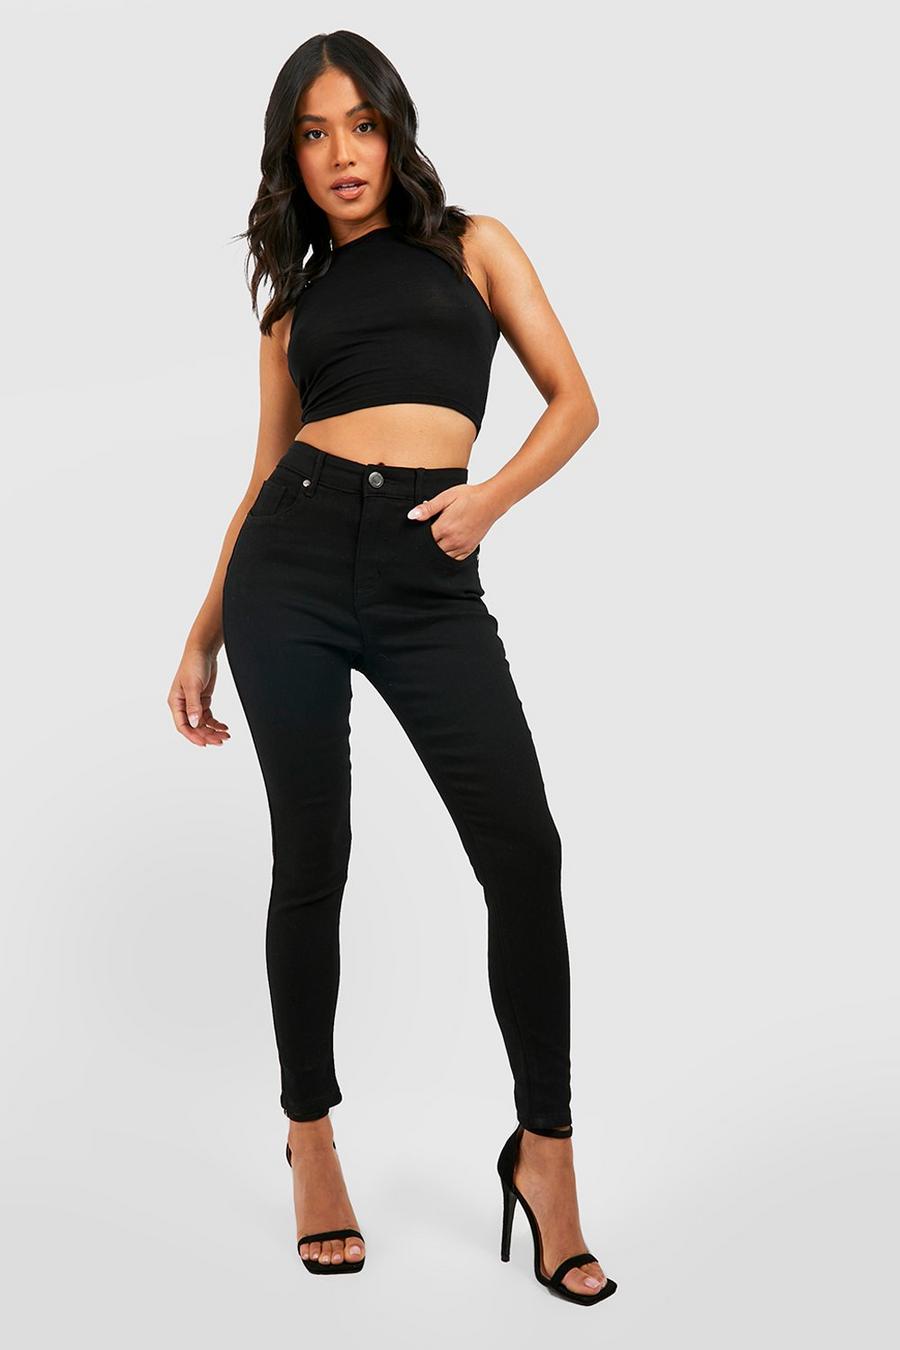 שחור סקיני ג'ינס high waist מבד ממוחזר, פטיט